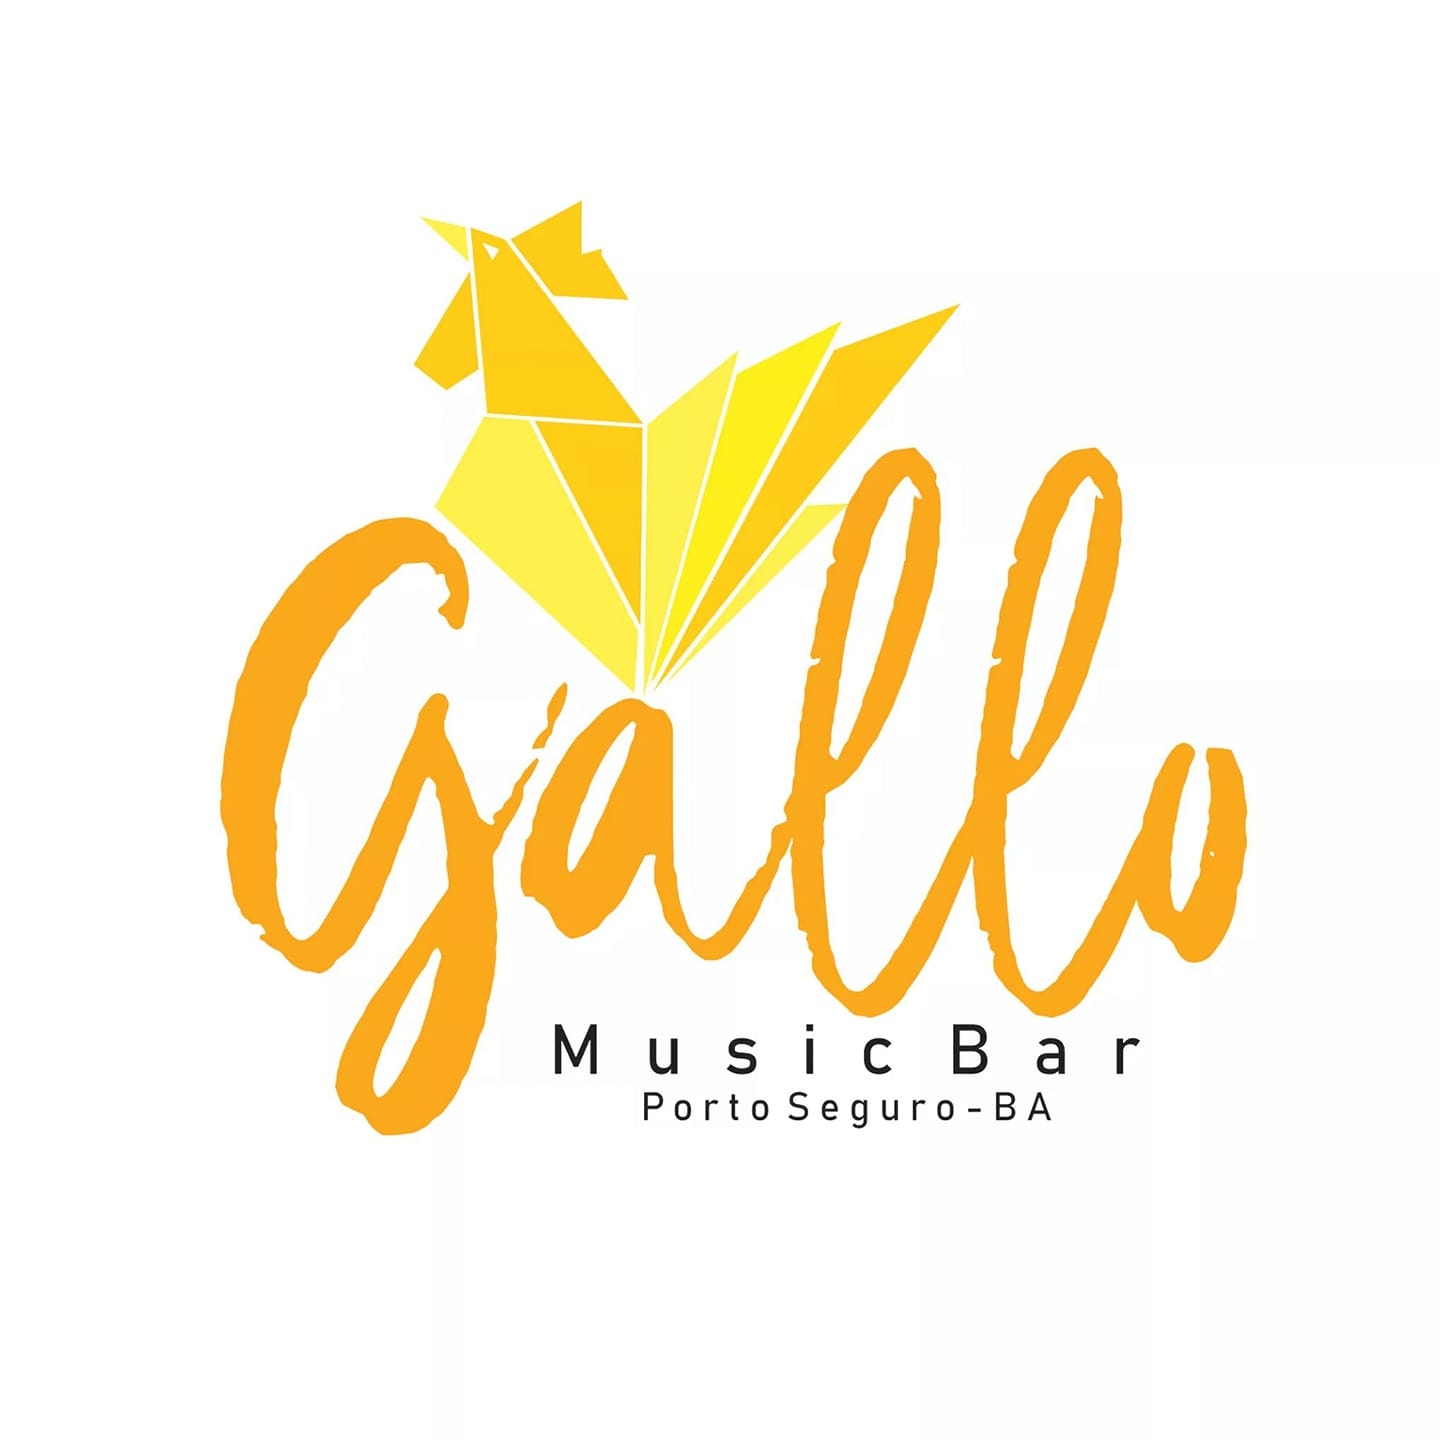 Cartaz  - Gallo Music Bar - Rua 2 de julho, 20B - Casa da Lenha, Sexta-feira 6 de Setembro de 2019